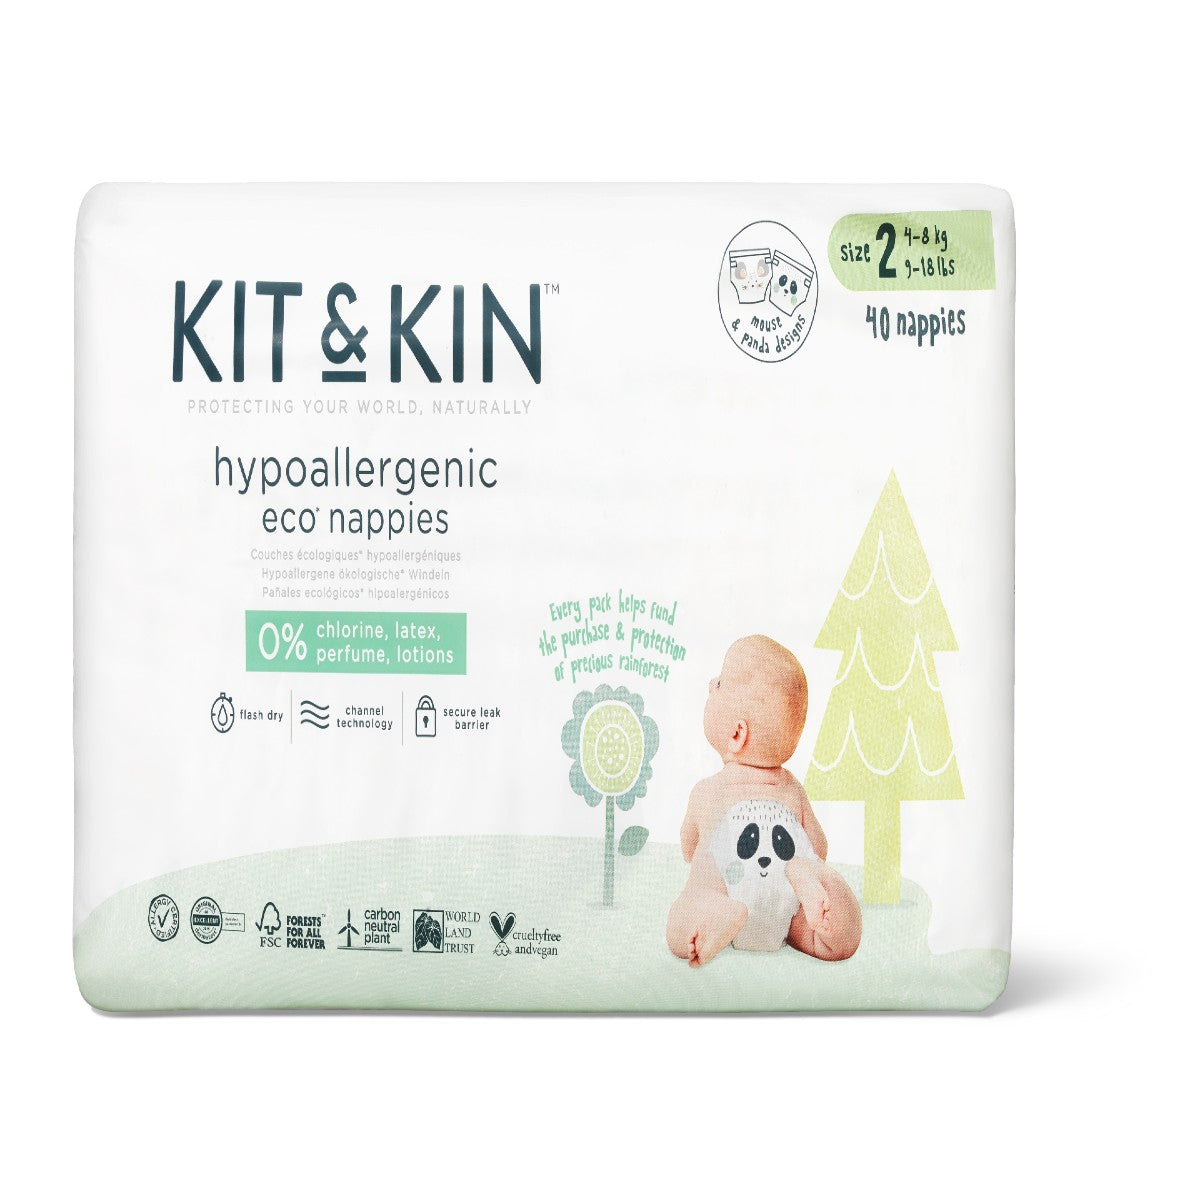 Kit and Kin eco nappies